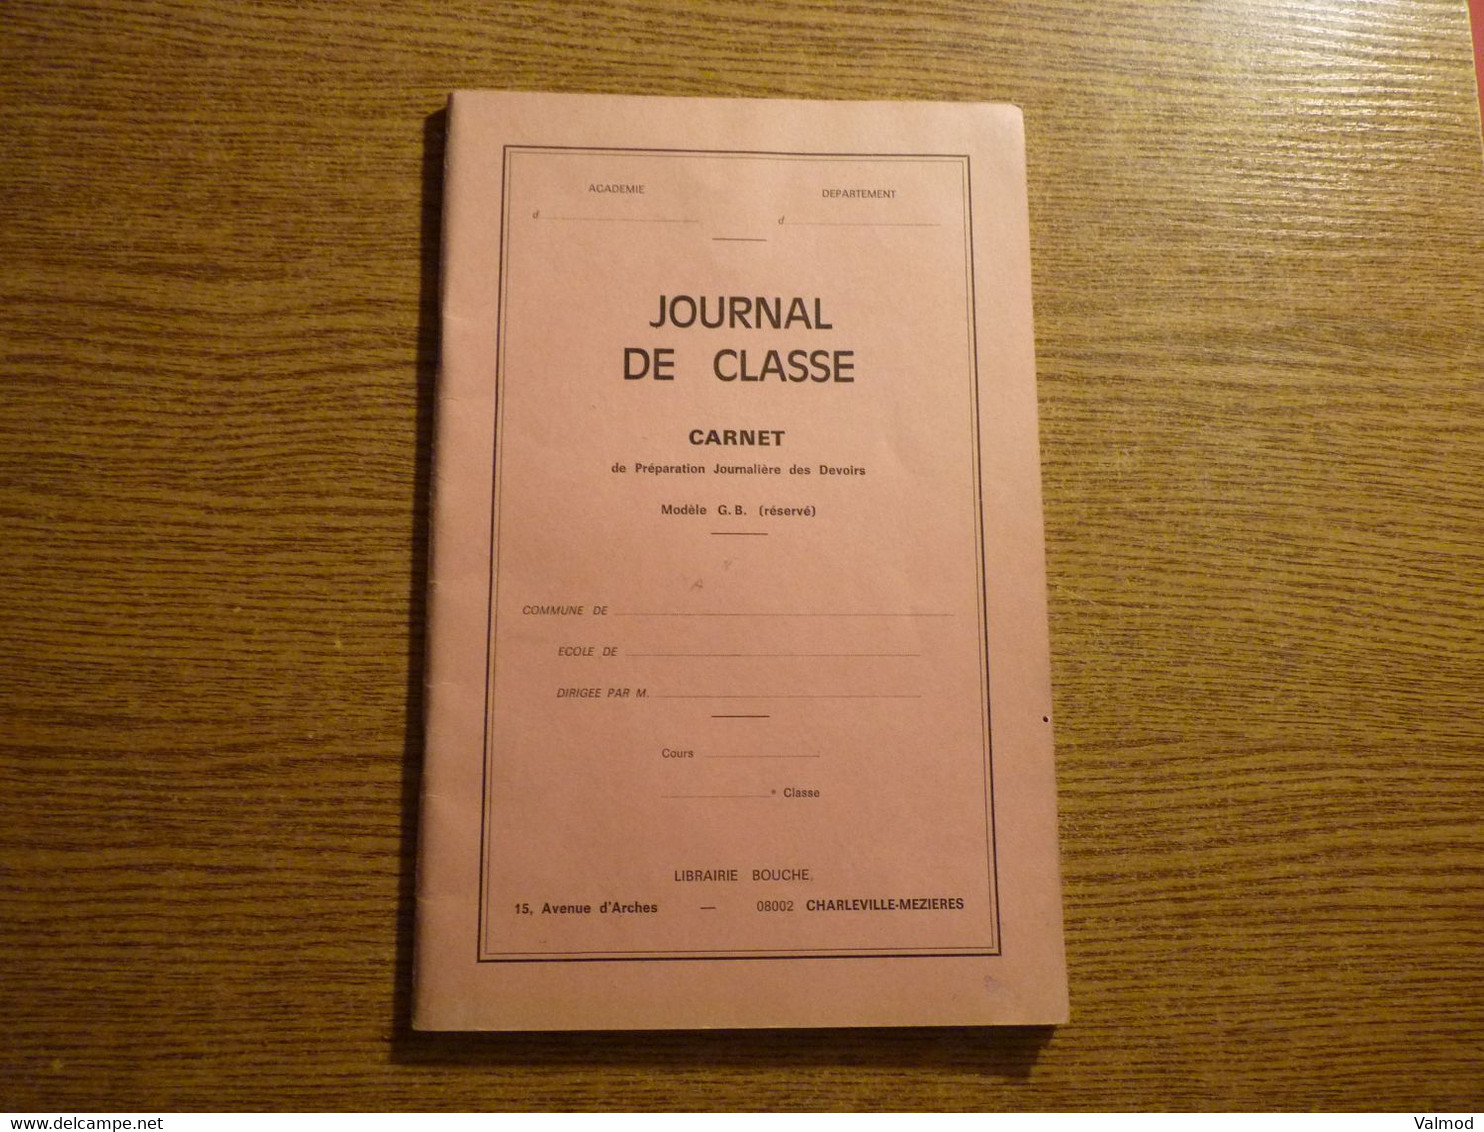 Scolaire - Journal De Classe - Carnet De Préparation Journalière Des Devoirs - Librairie Bouche - Charleville-Mézières. - Supplies And Equipment